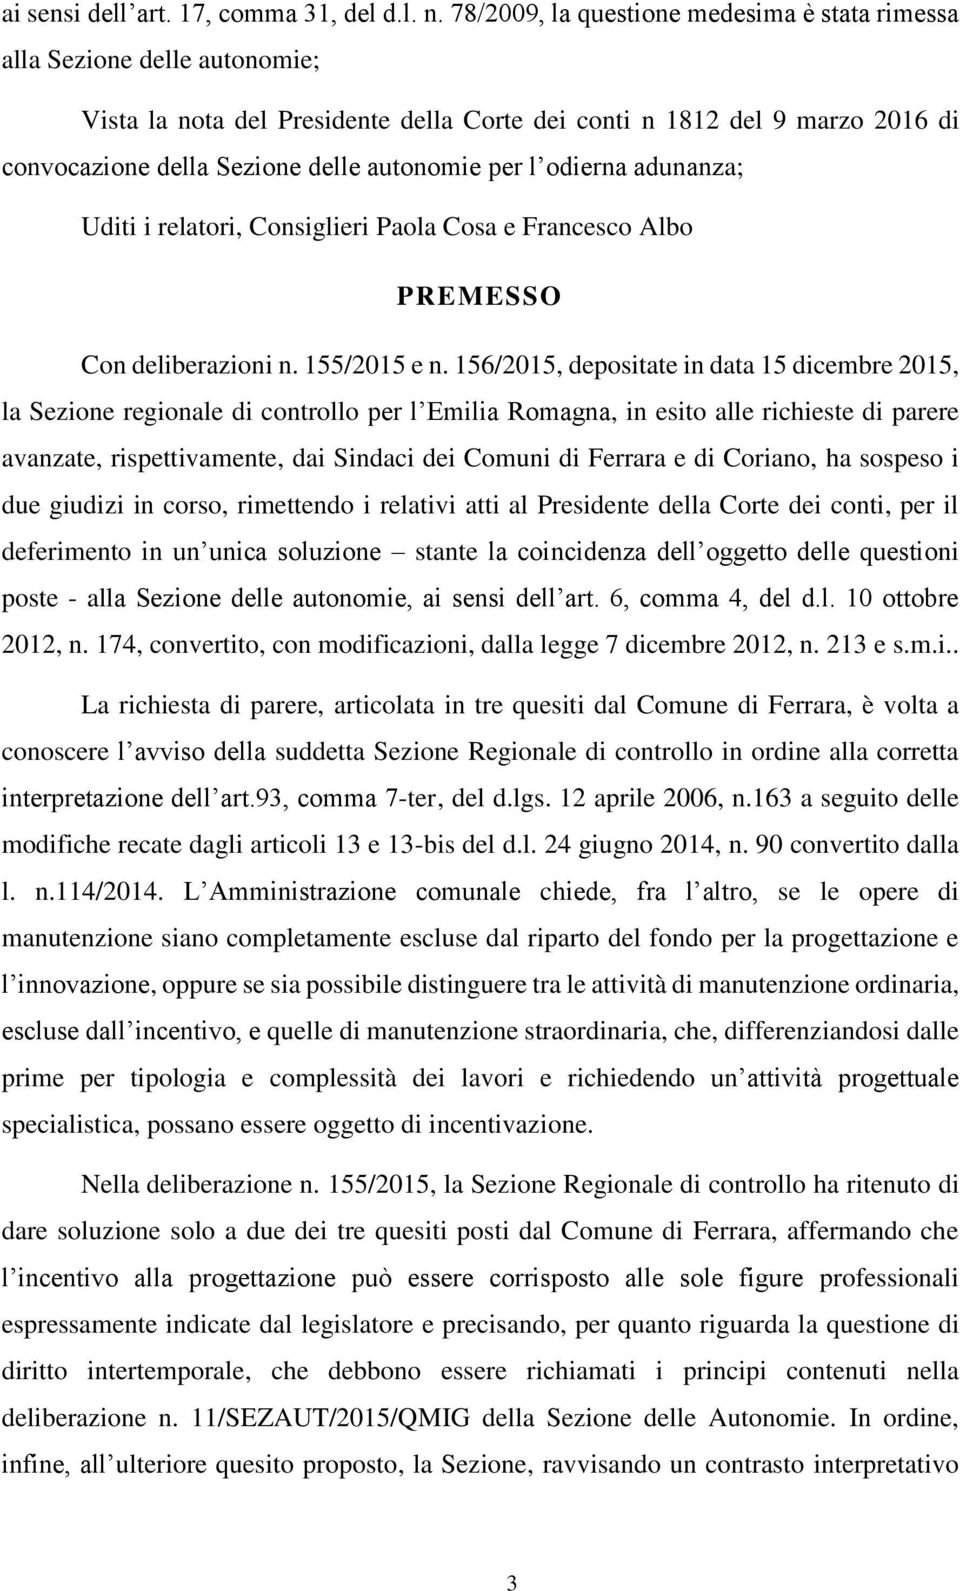 per l odierna adunanza; Uditi i relatori, Consiglieri Paola Cosa e Francesco Albo PREMESSO Con deliberazioni n. 155/2015 e n.